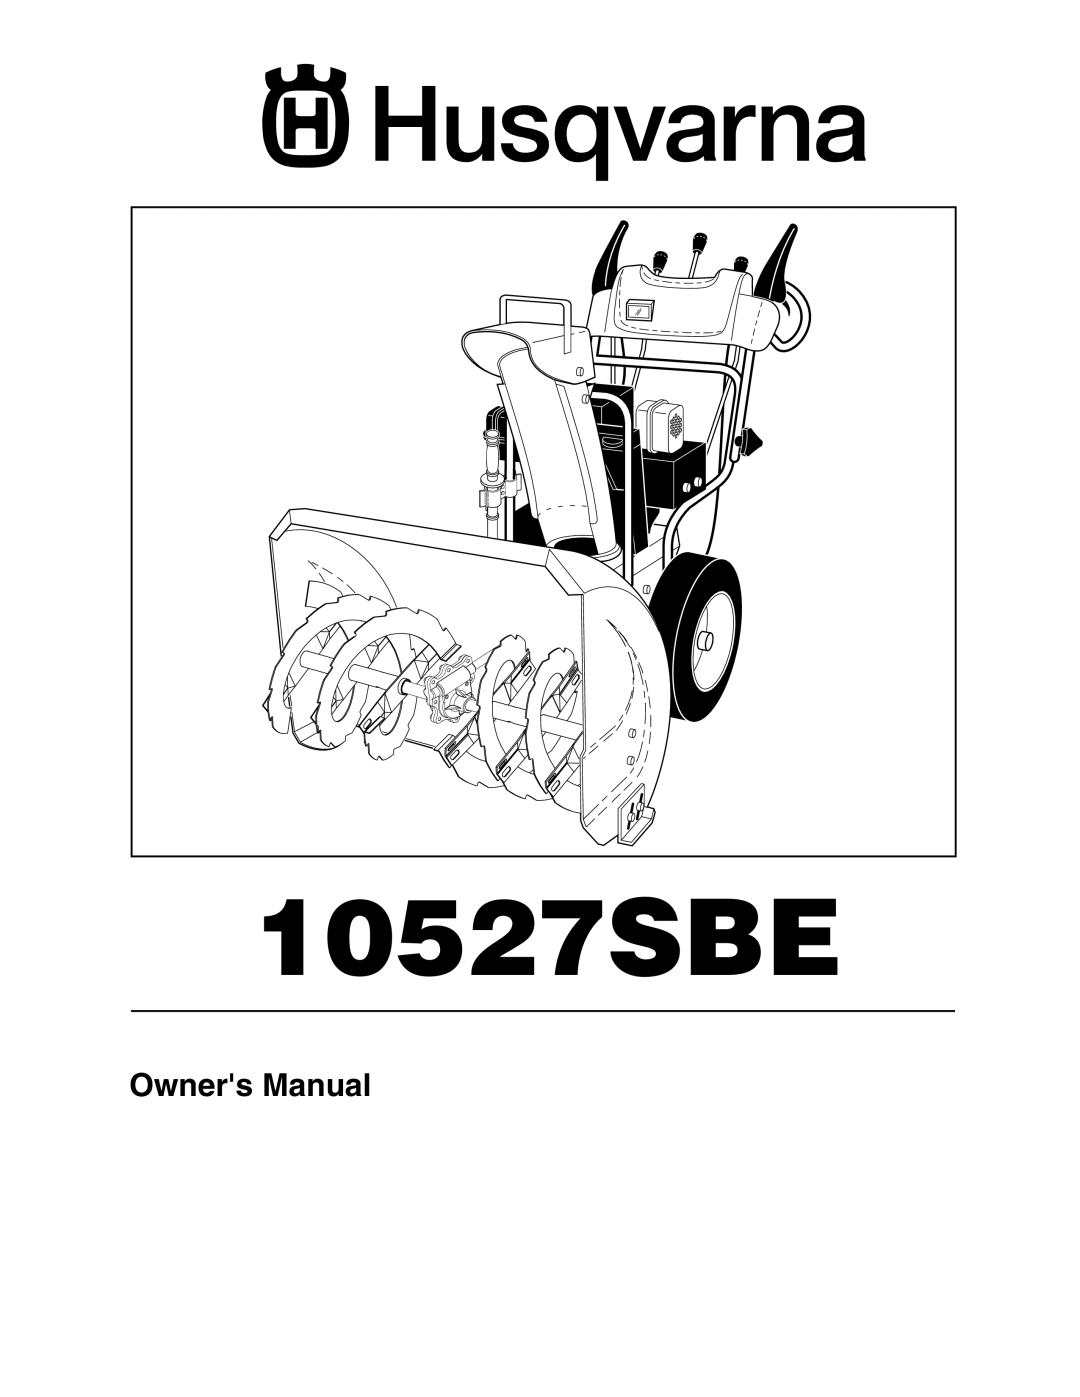 Husqvarna 10527SBE owner manual 